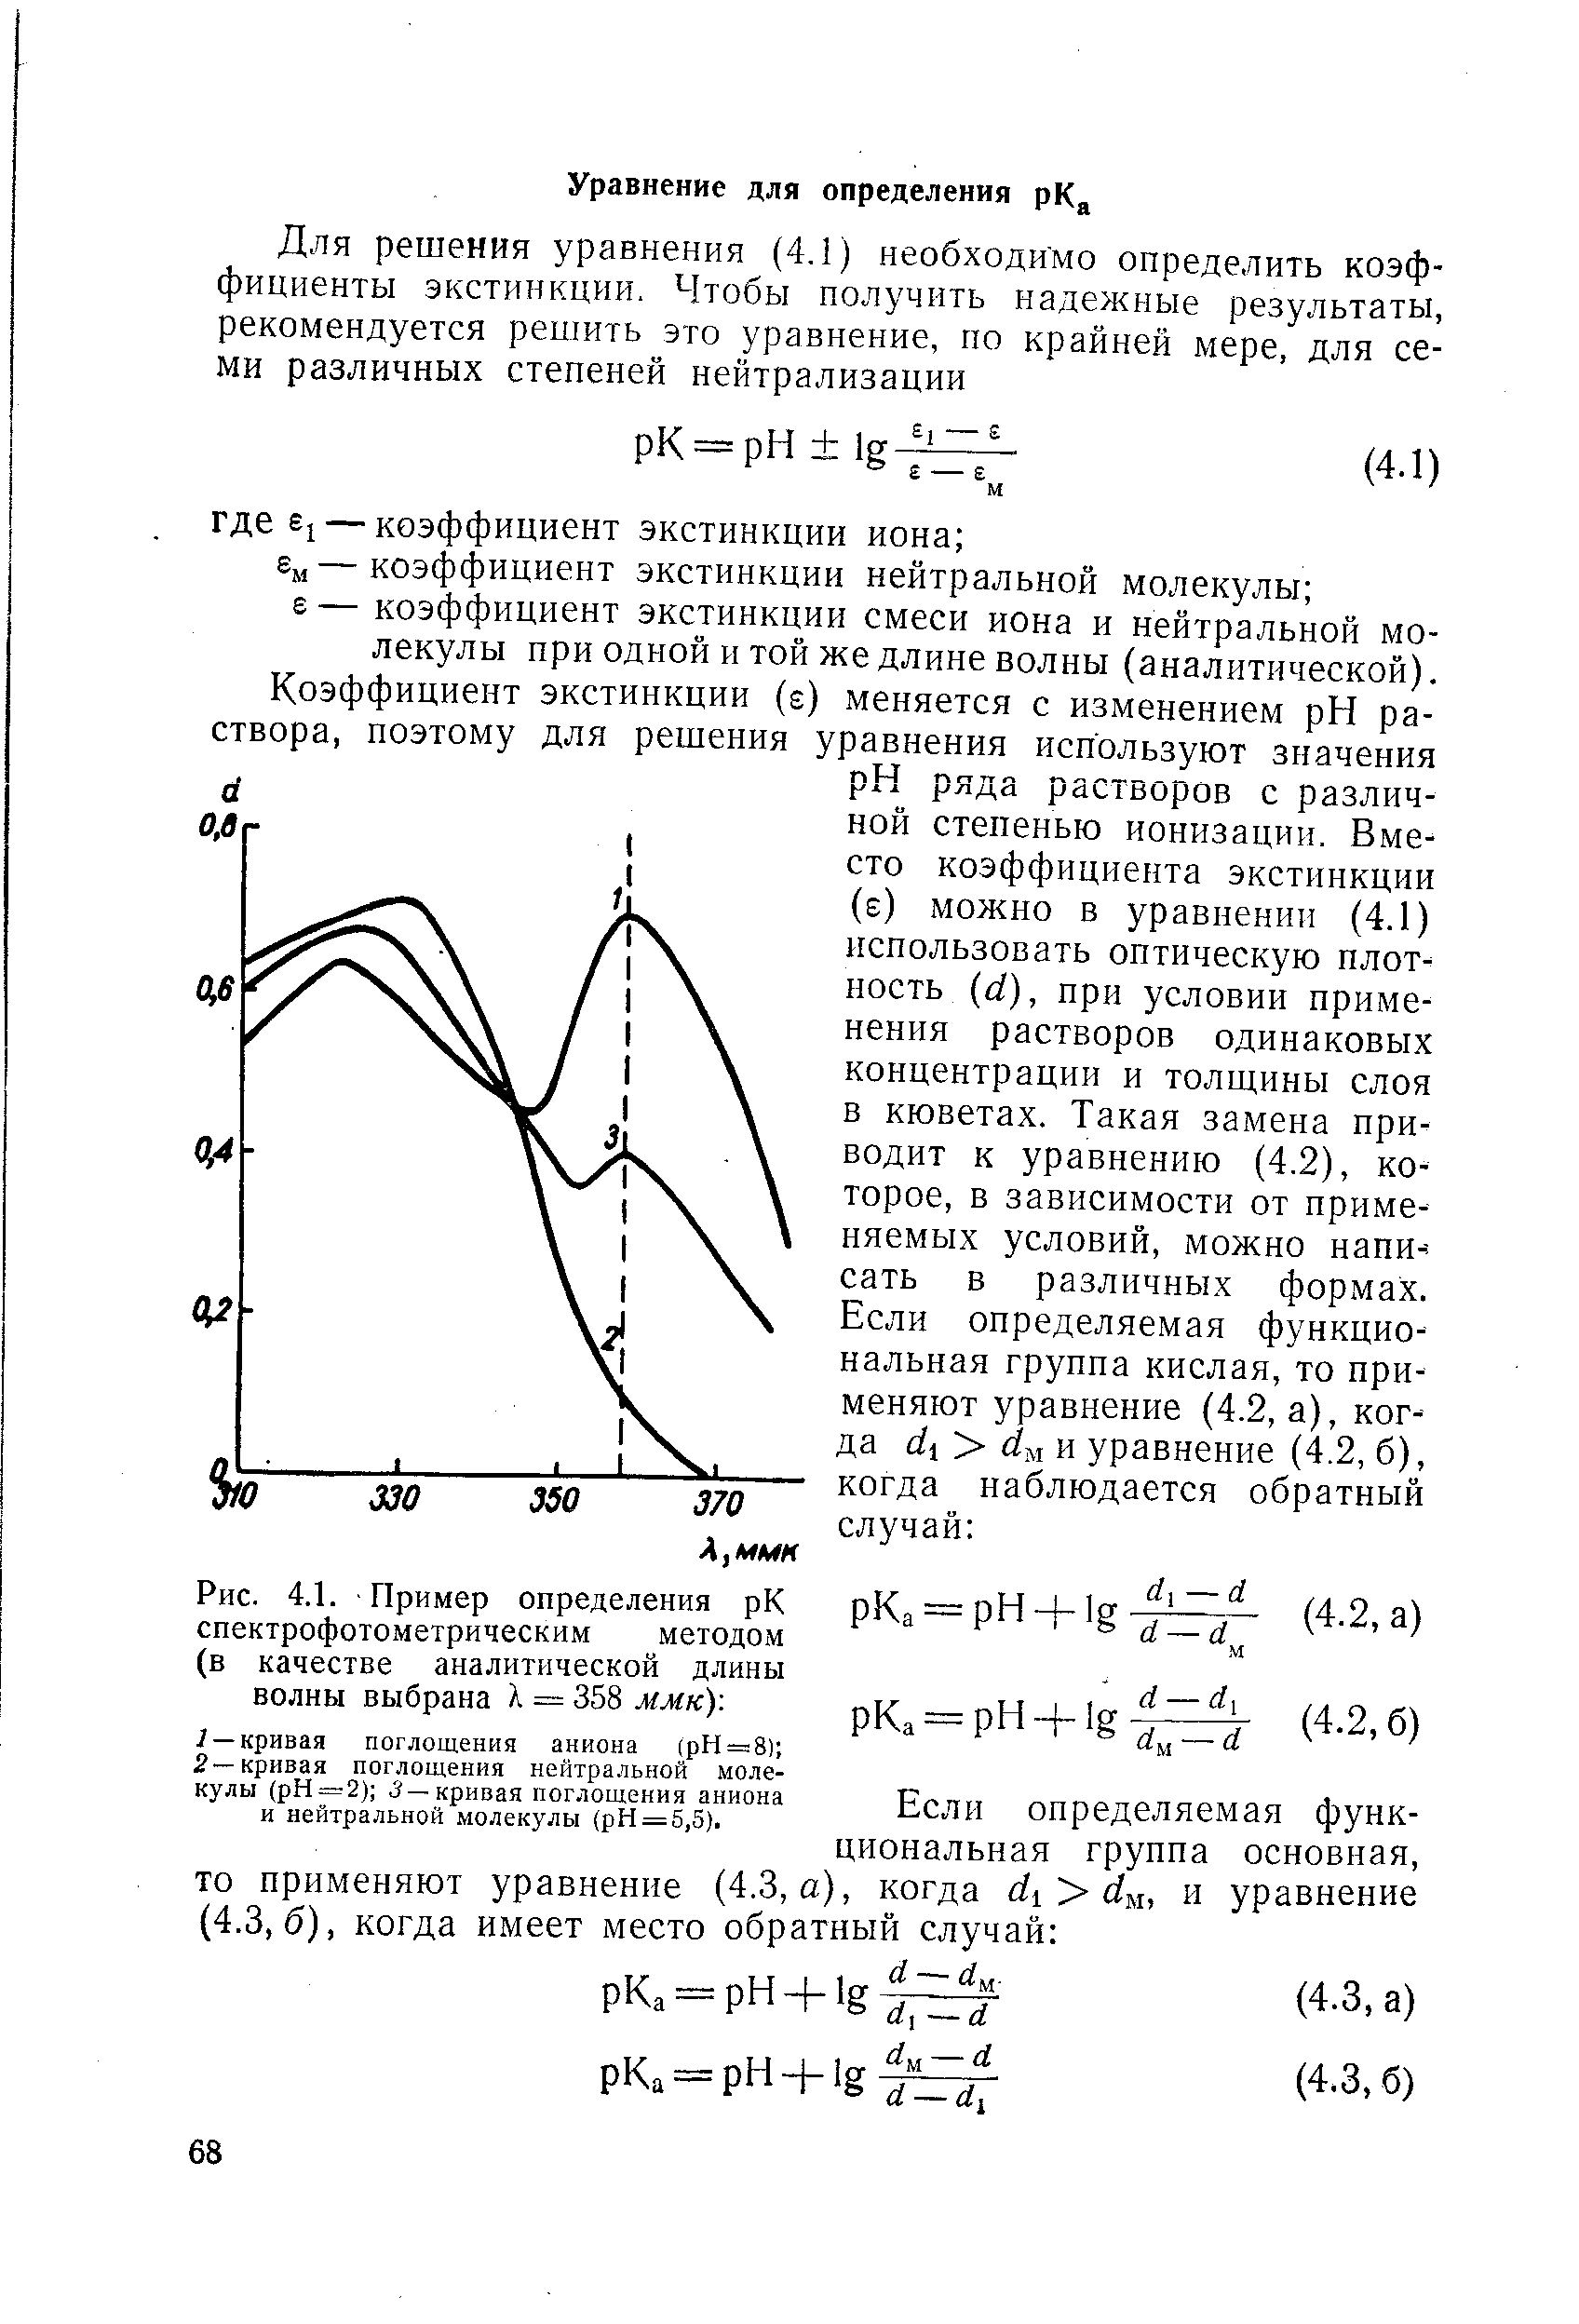 Кривая поглощения нейтральной молекулы (pH —2) 3 —кривая поглощения аниона и нейтральной молекулы (pH = 5,5).